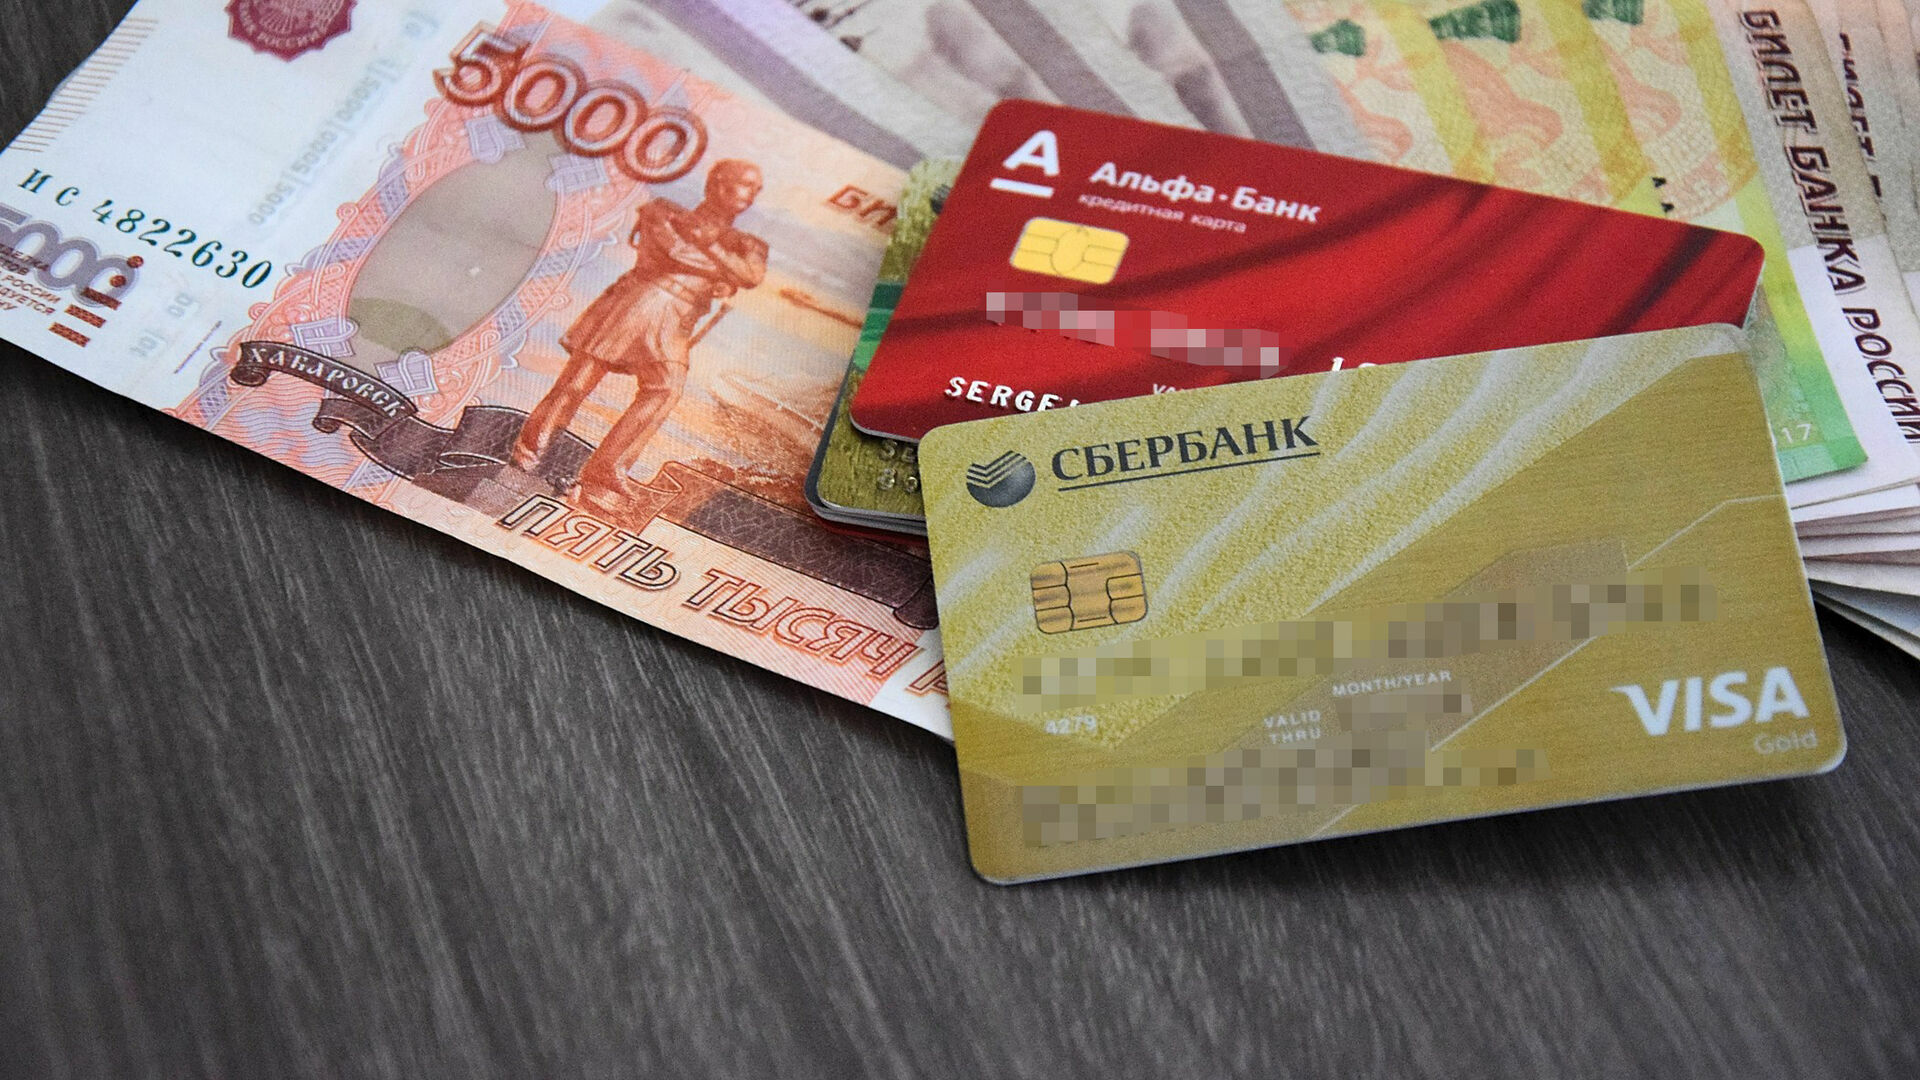 Альфа-банк продлит срок действия карт Visa и Mastercard до 2028 года